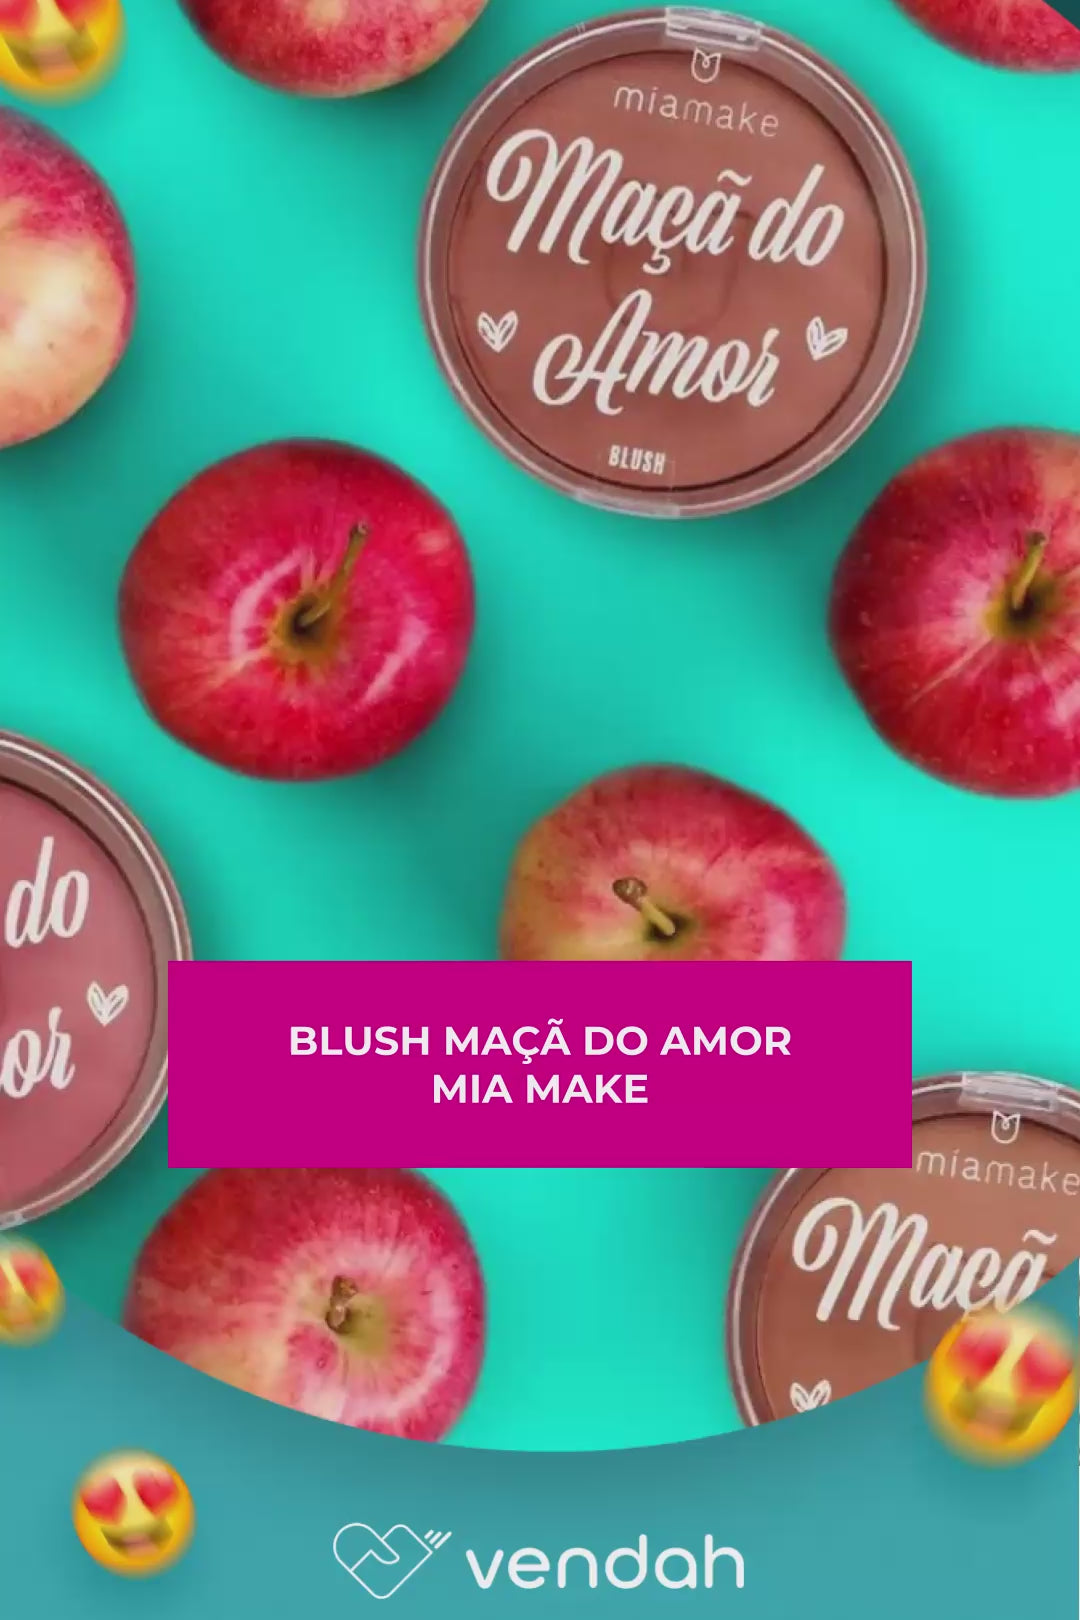 Blush Maçã do Amor - Mia Make